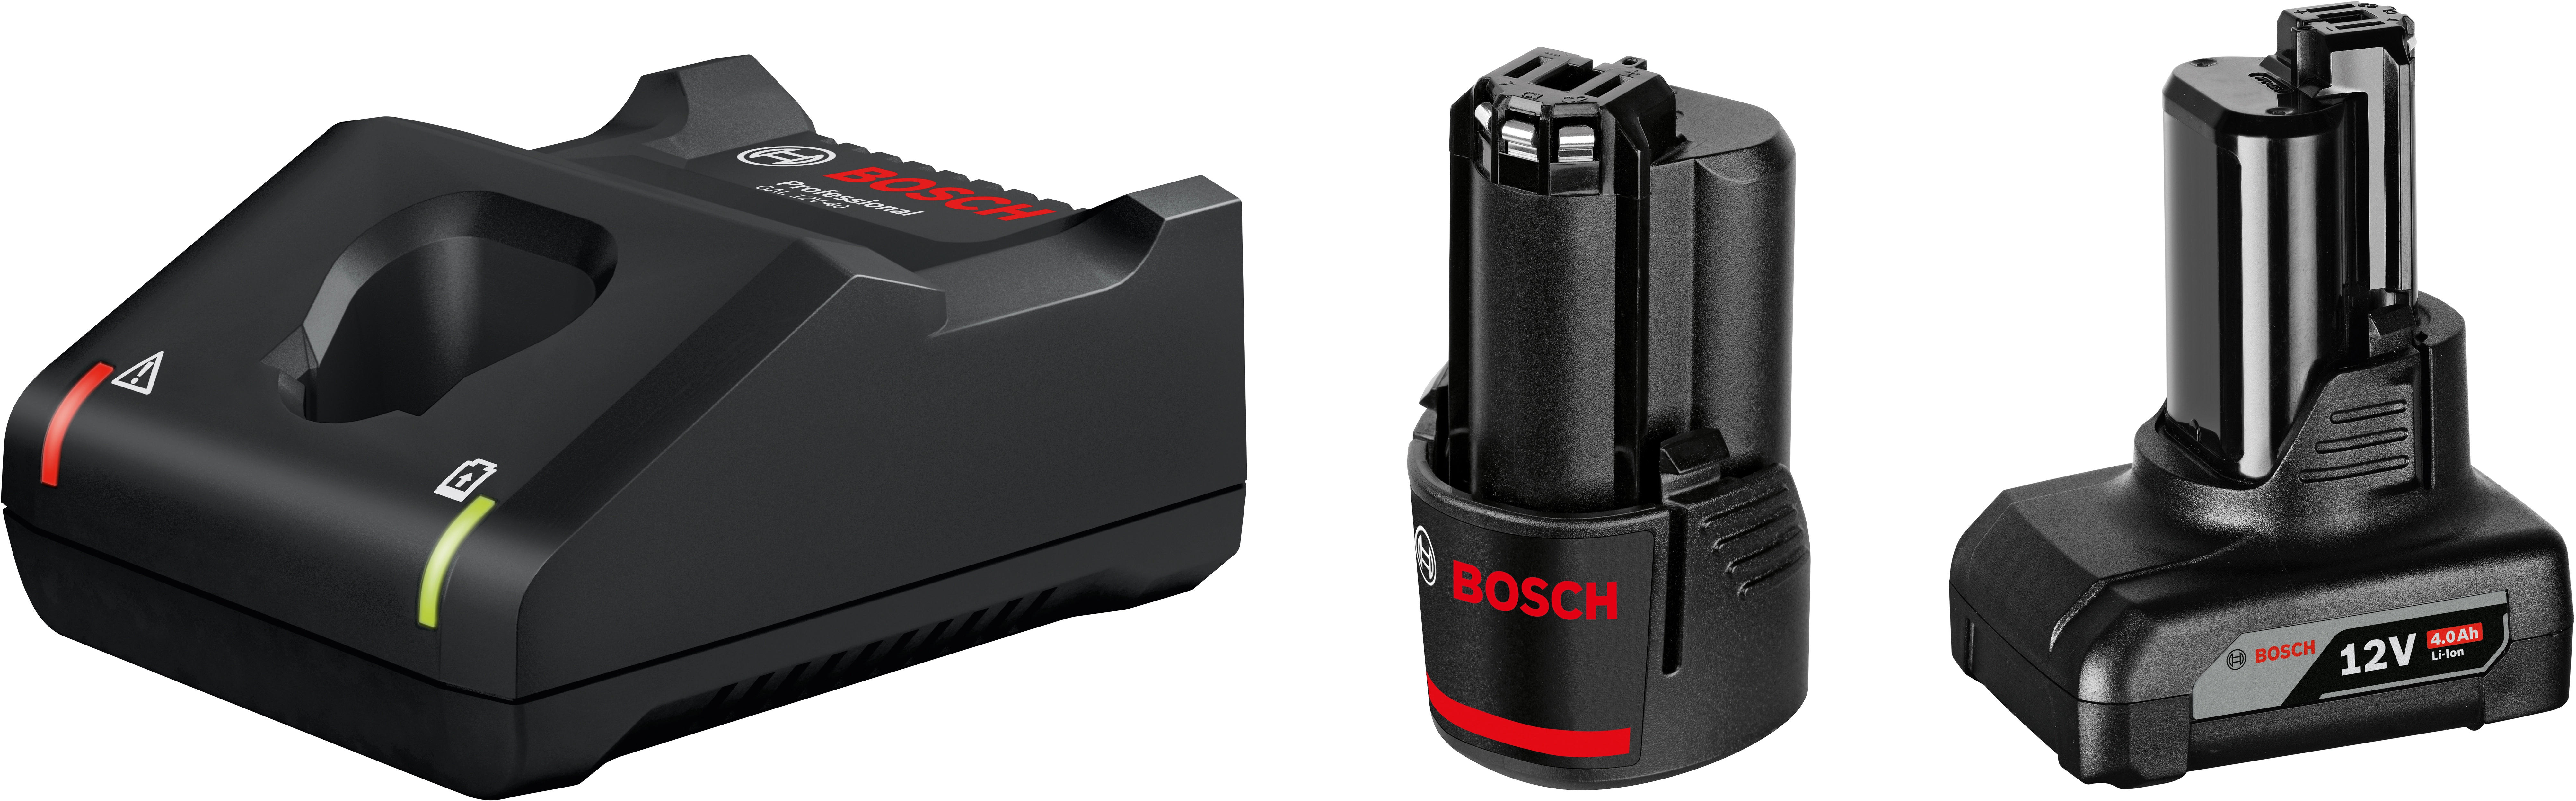 Bosch Professional Akku-Starterset mit 2 Akkus und Ladegerät GAL kaufen bei  OBI